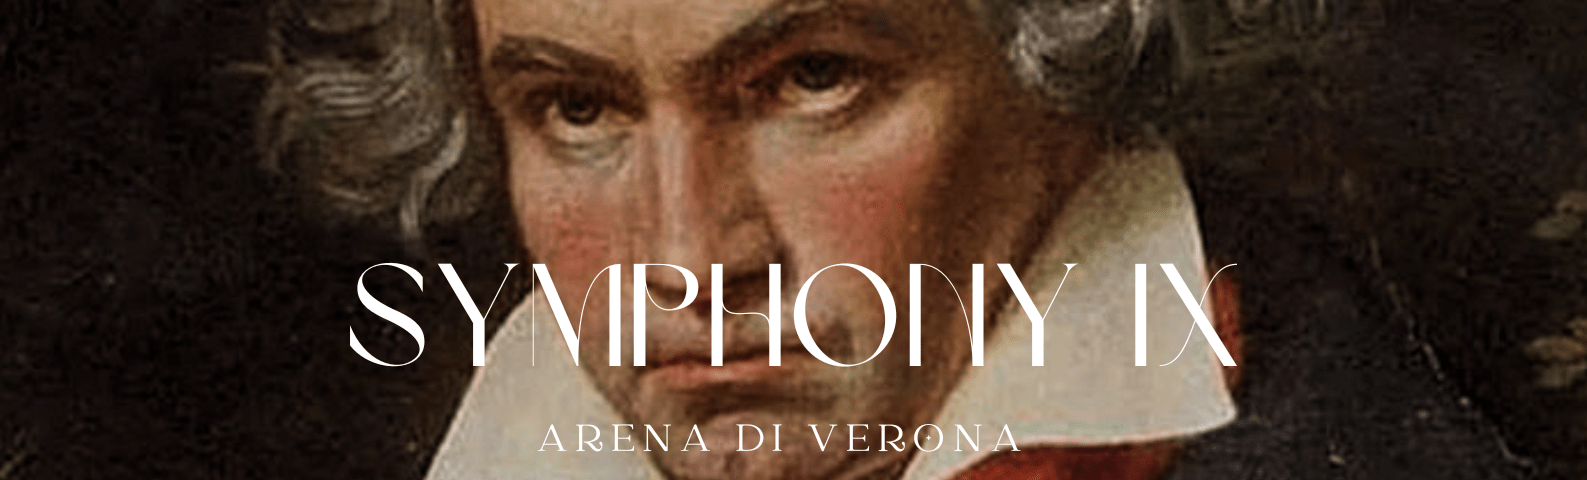 symphony-9-IX-beethoven-arena-di-verona-tickets